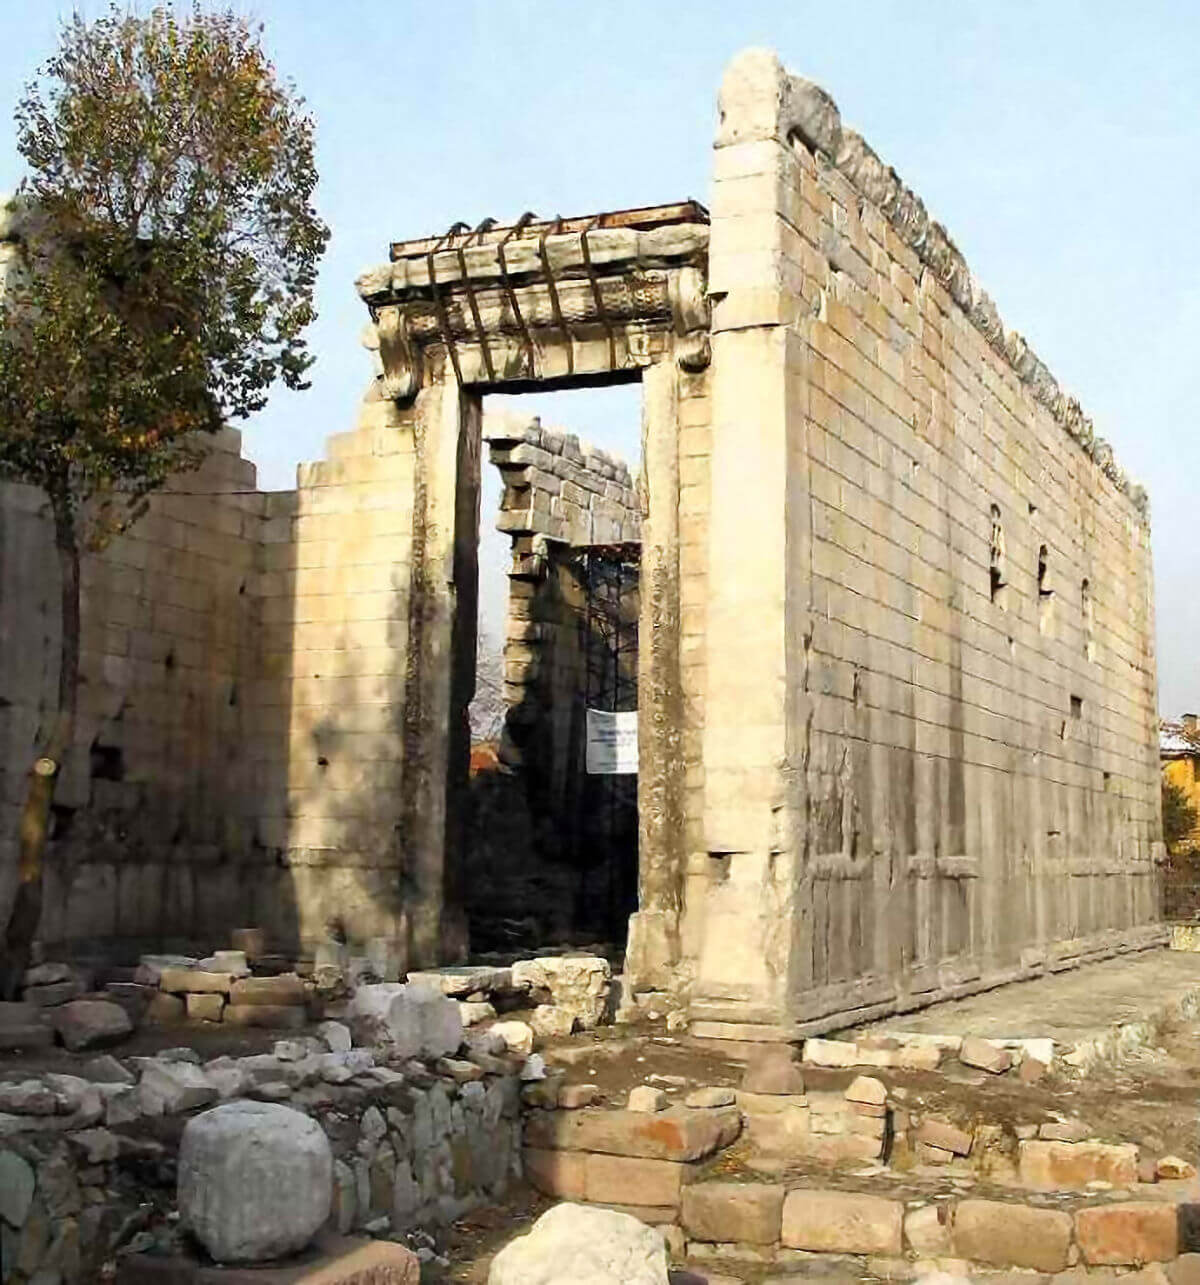 The Temple of Augustus in Ankara, Turkey (Monumentum Ancyranum)